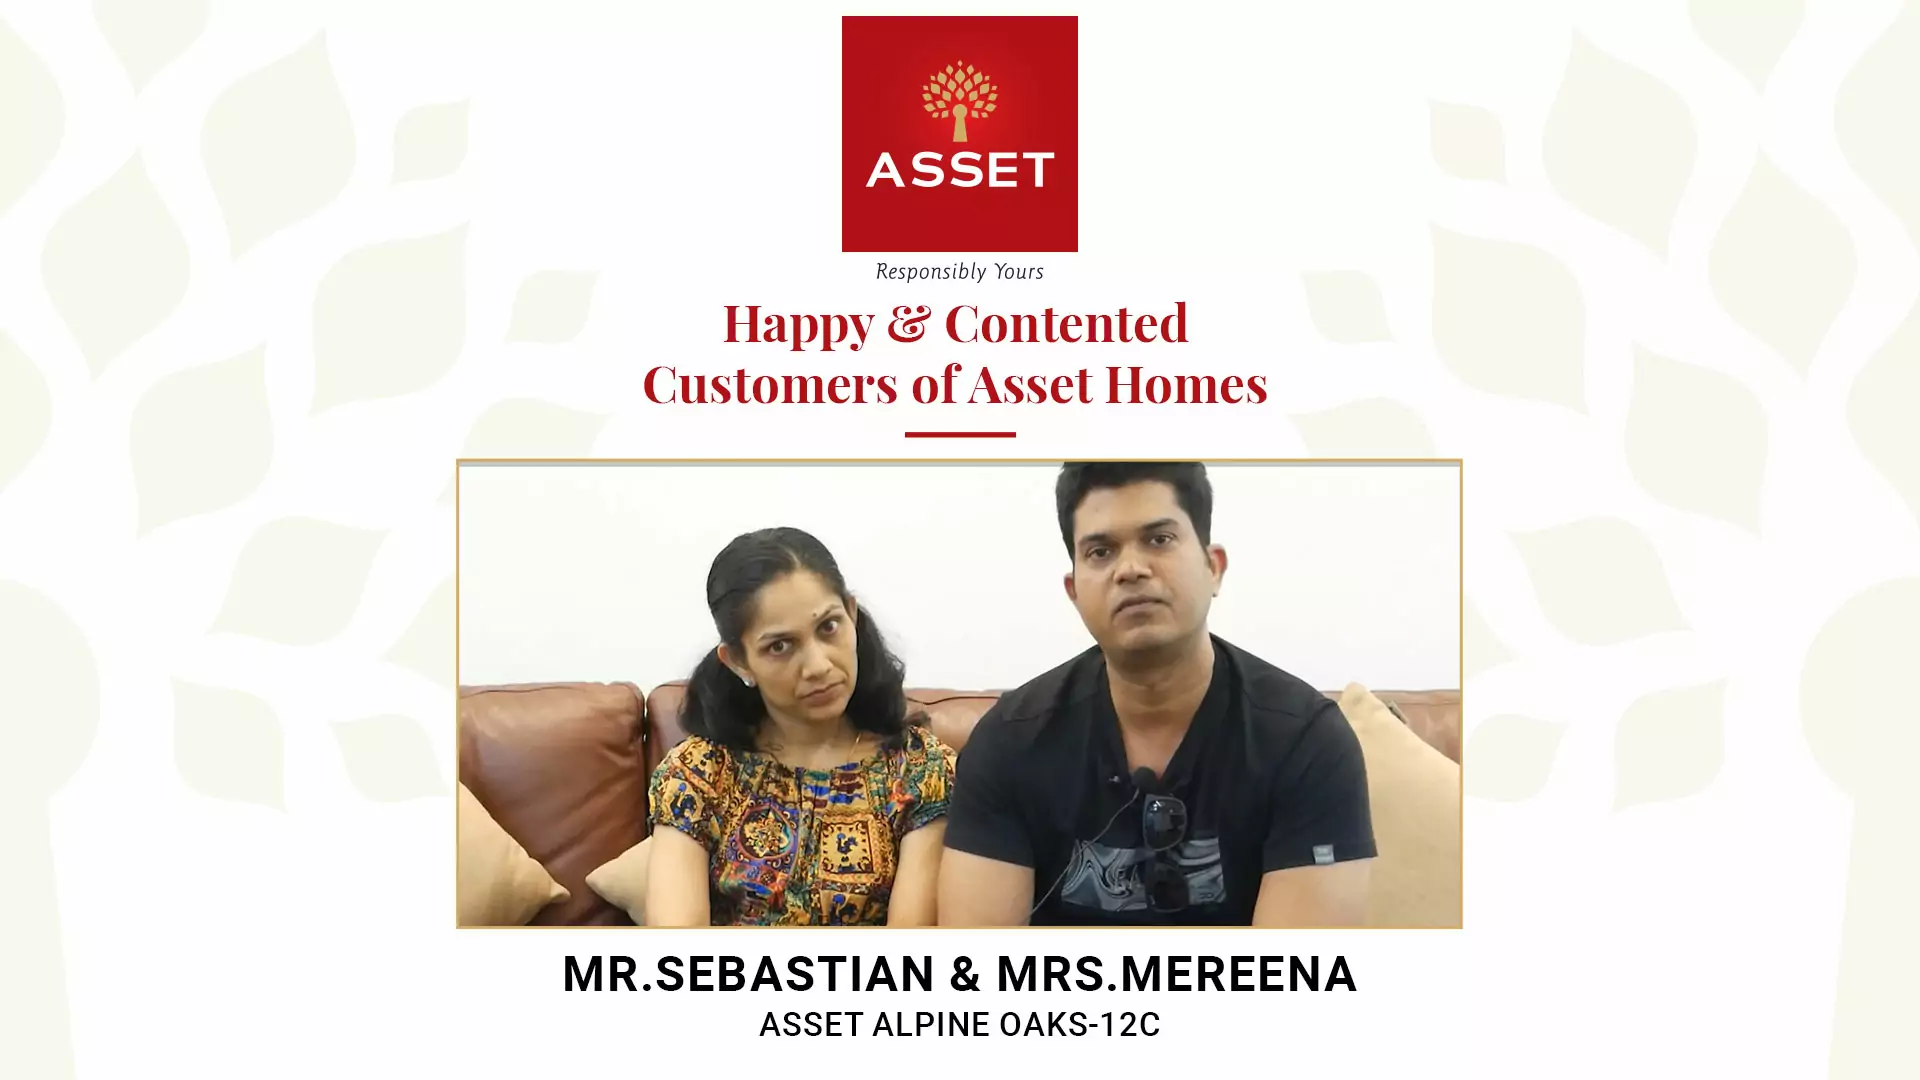 Mr. Sebastian & Mrs. Mereeena: Asset Alpine Oaks